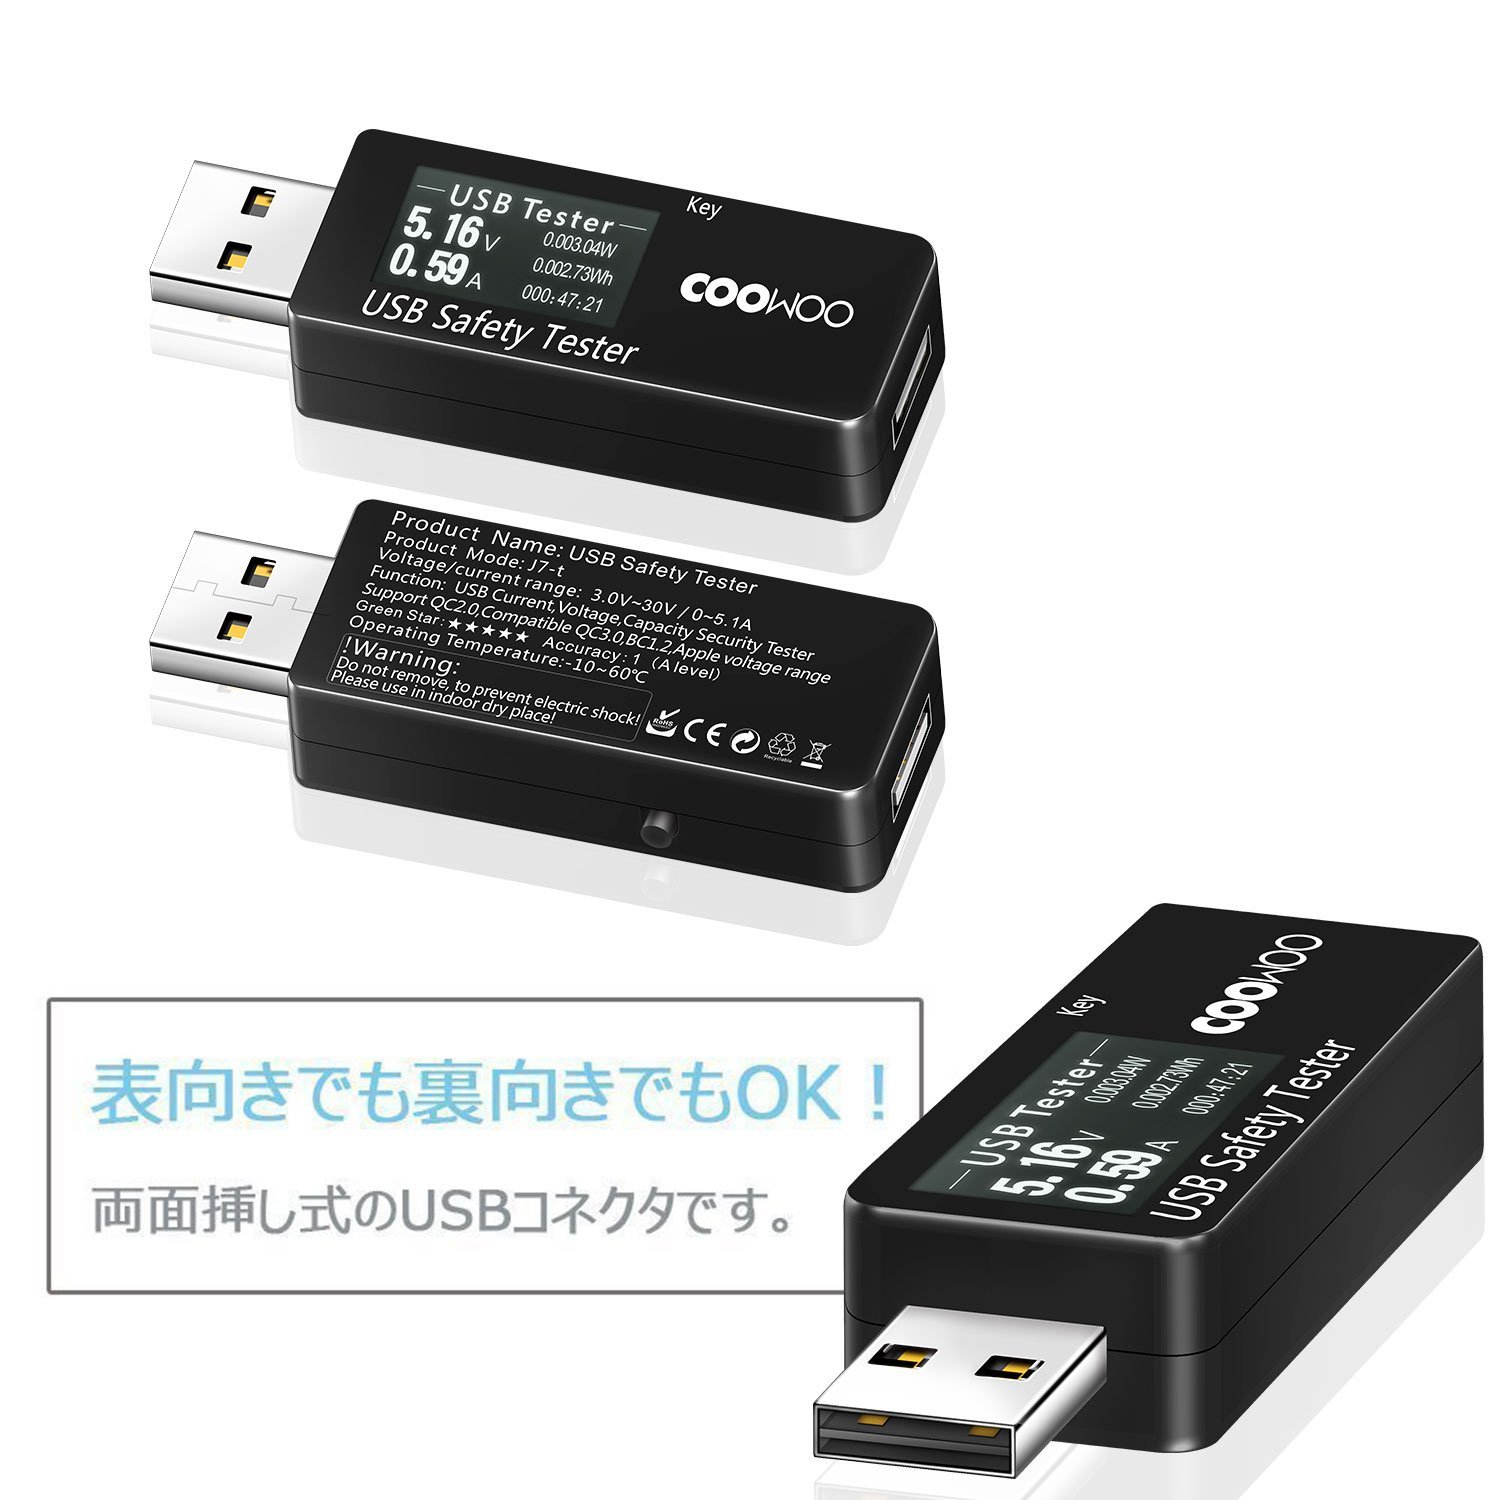 COOWOO USB Tester Digitaler Leistungsmesser Multimeter Tester Amperemeter Voltmeter DC 5,1A 30V Geschwindigkeitstest von Ladegeräten Monitor für Stromstärke Spannung und Kapazität 